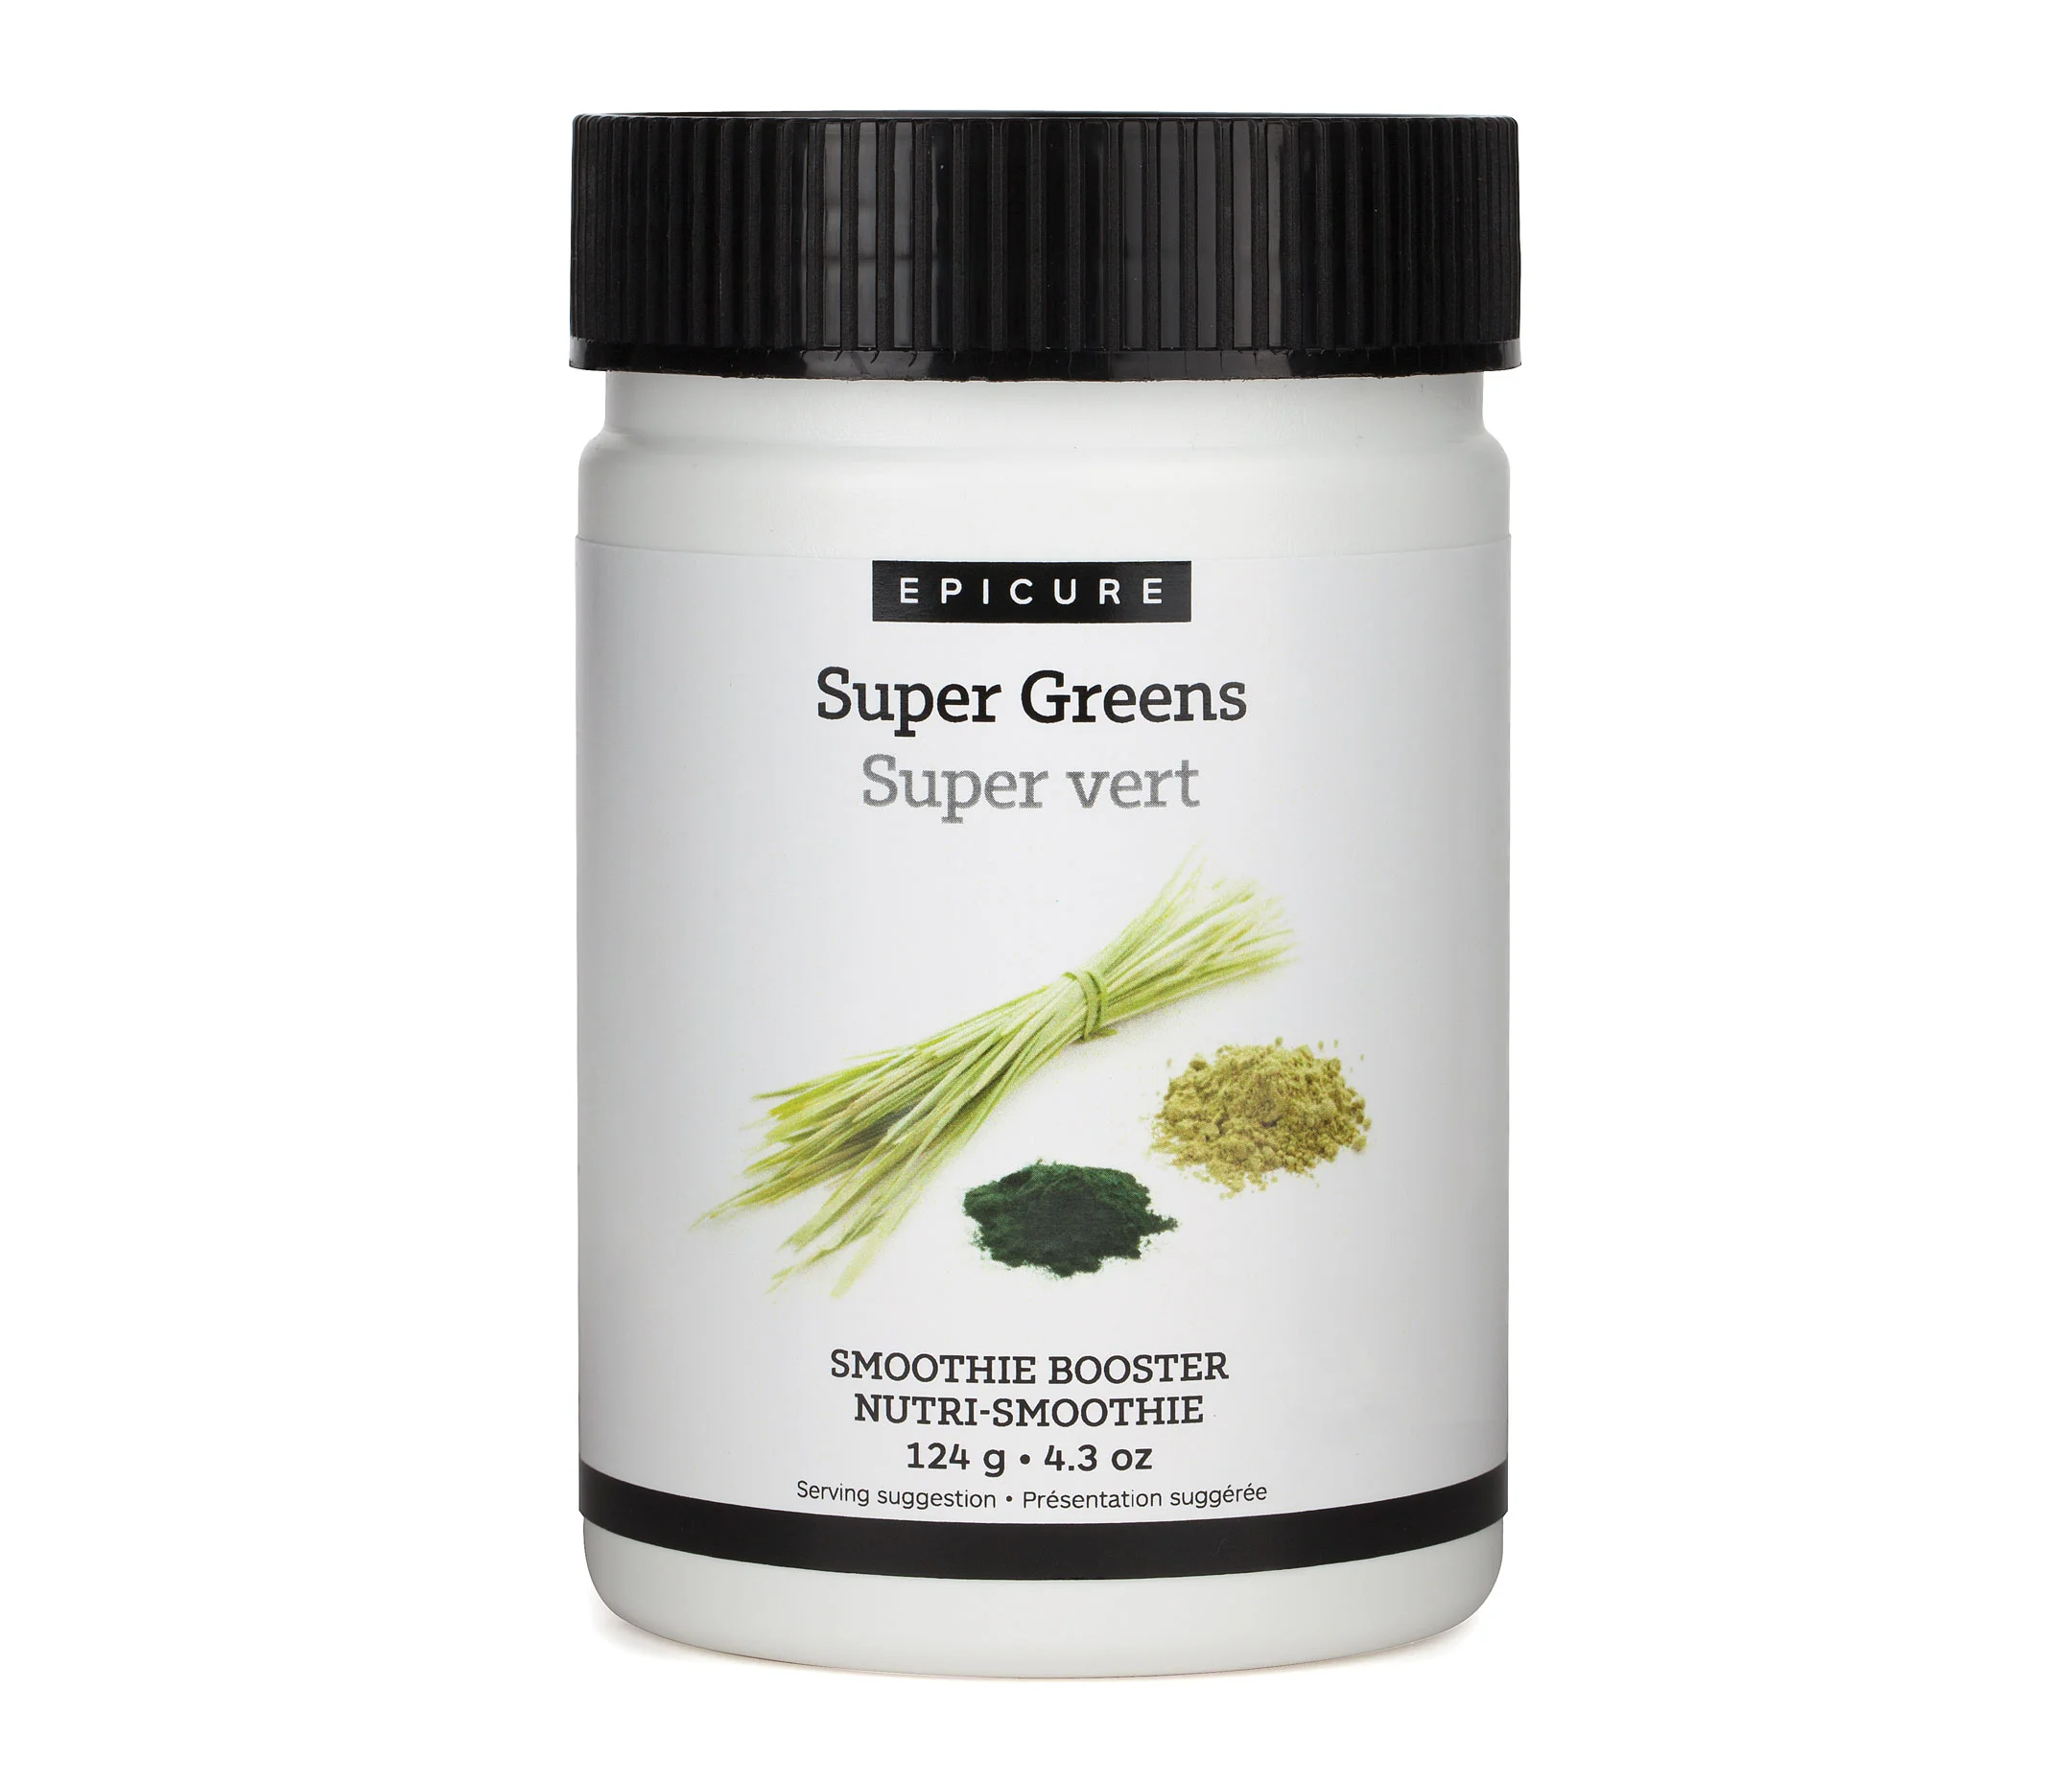 Nutri-smoothie Super vert